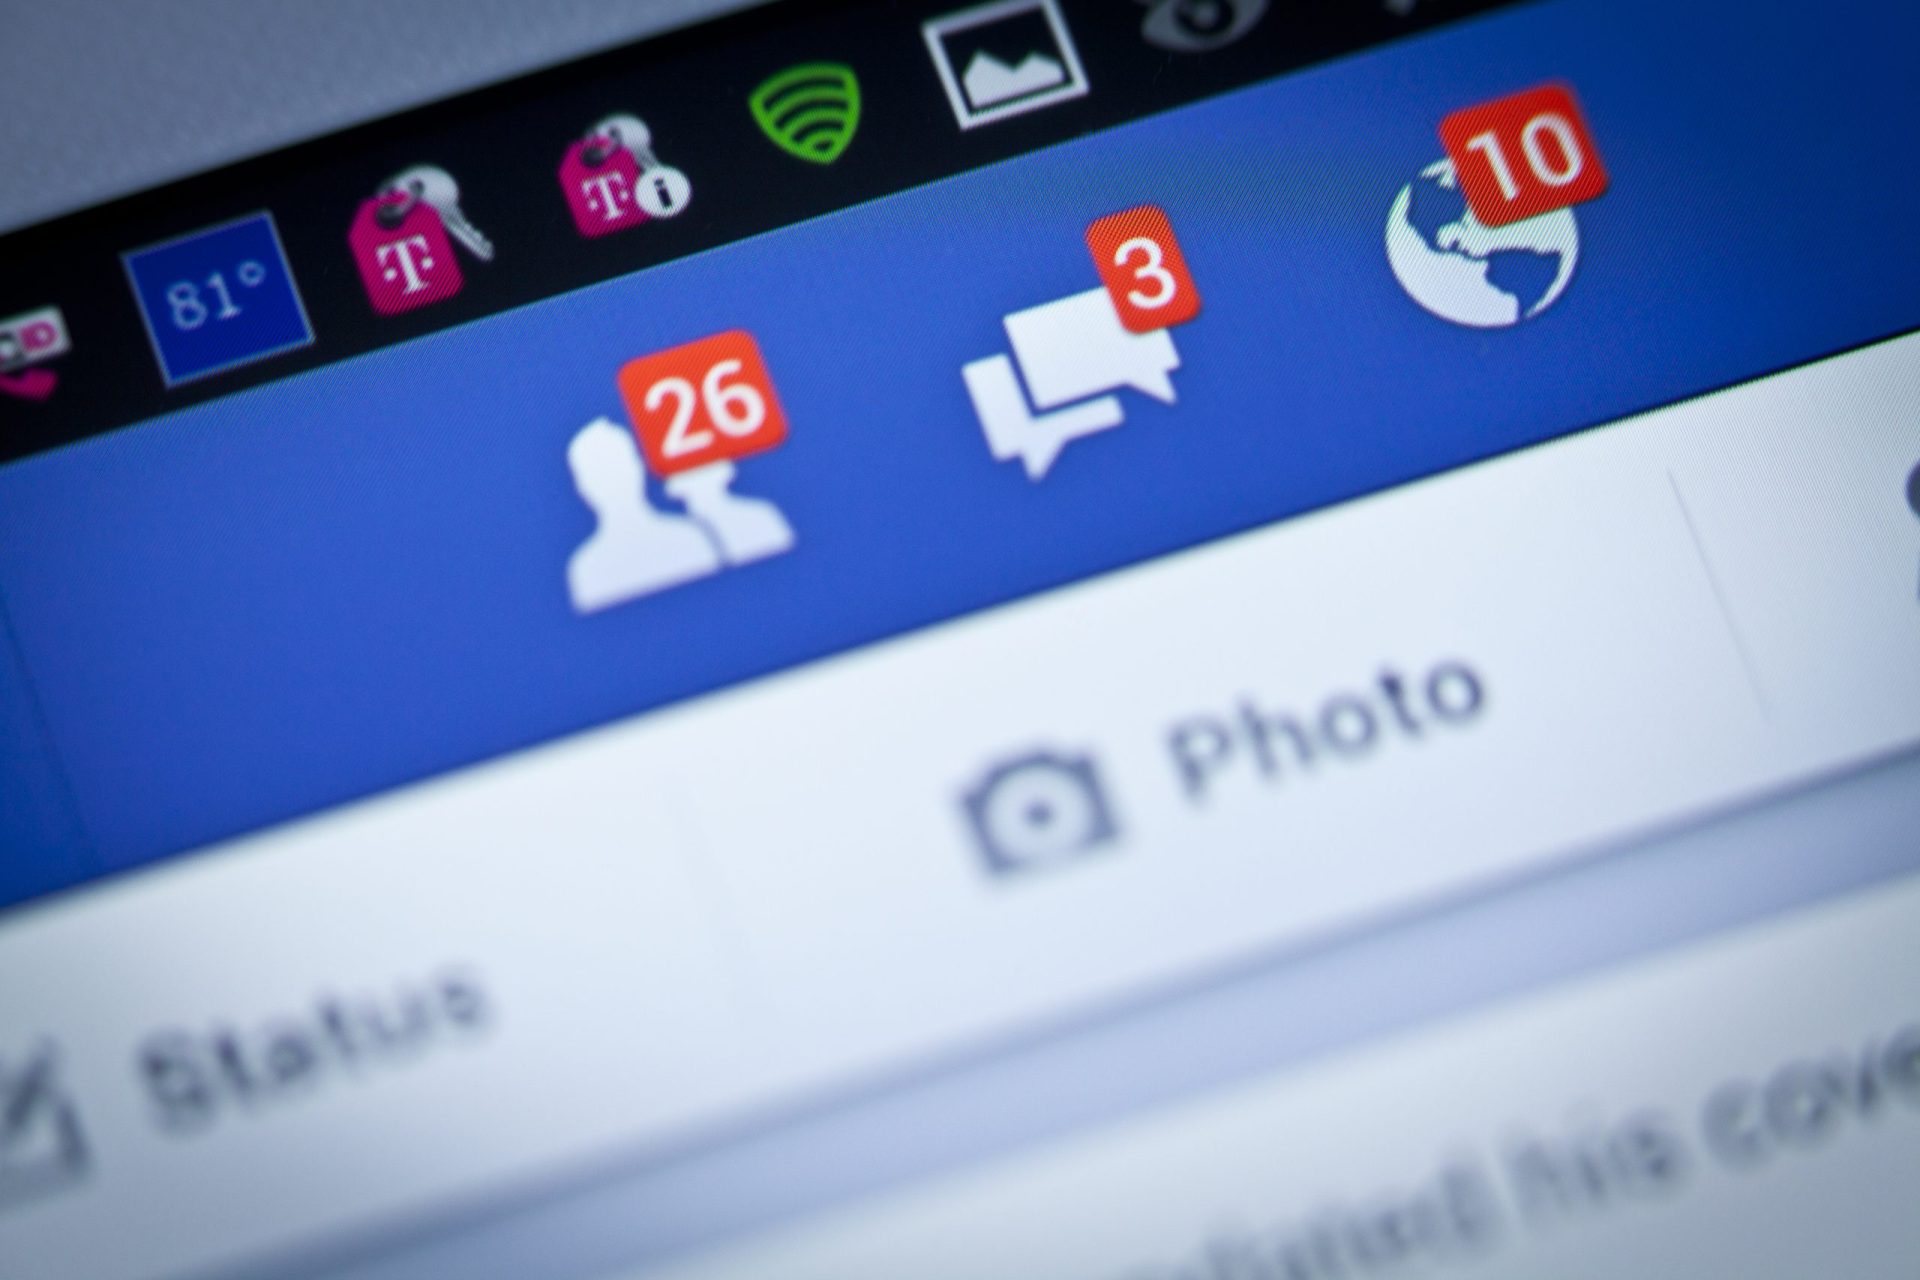 Os ‘amigos’ do Facebook fazem tão bem quanto os reais?